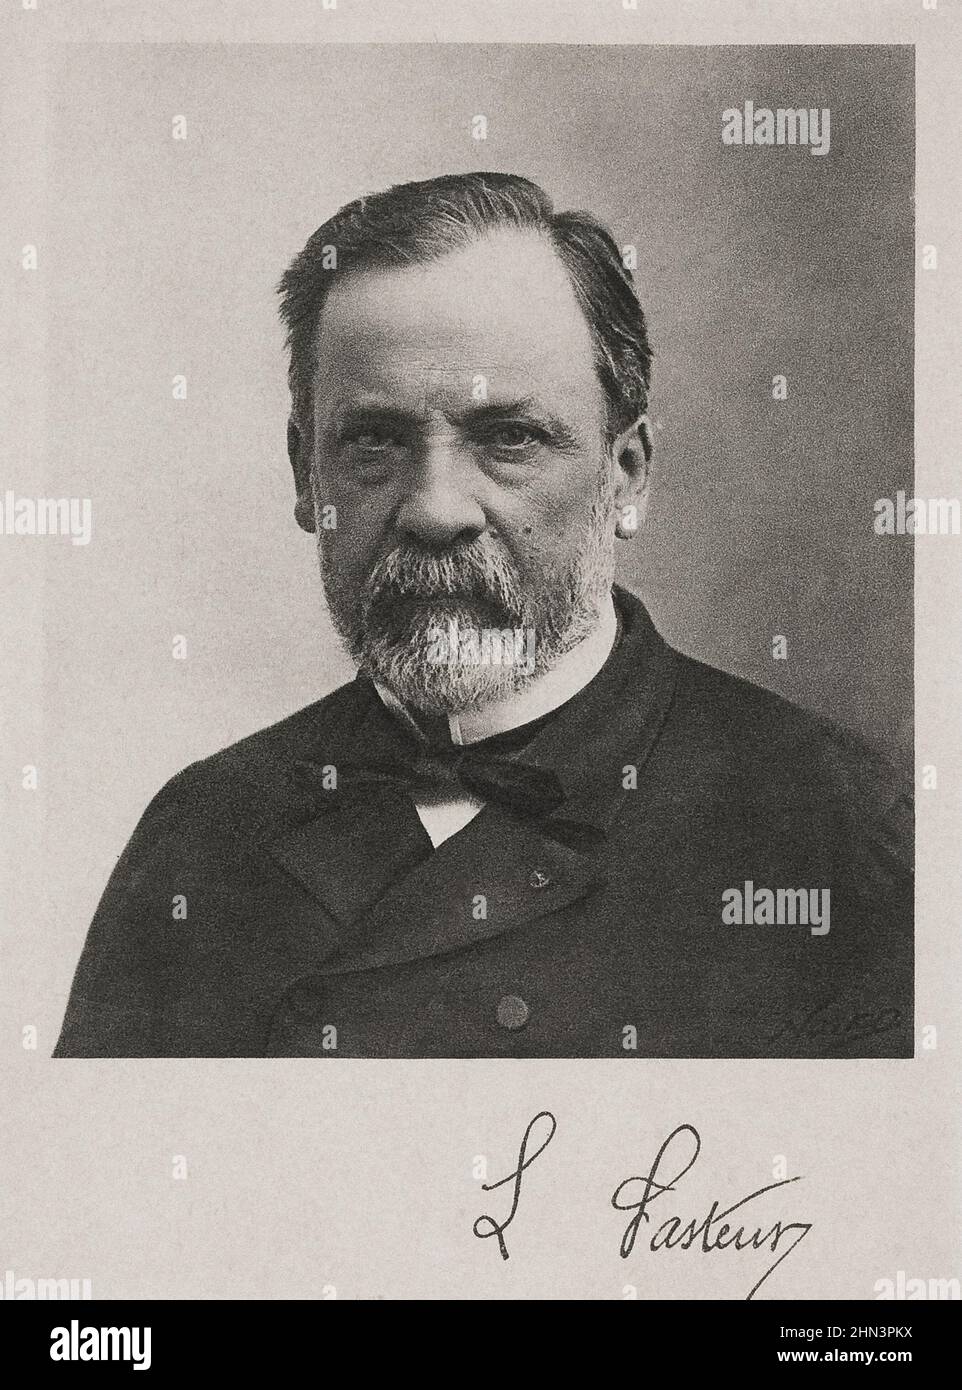 Portrait de Louis Pasteur. Louis Pasteur (1822 – 1895) est un chimiste et microbiologiste français renommé pour ses découvertes sur les principes de la vaccination Banque D'Images